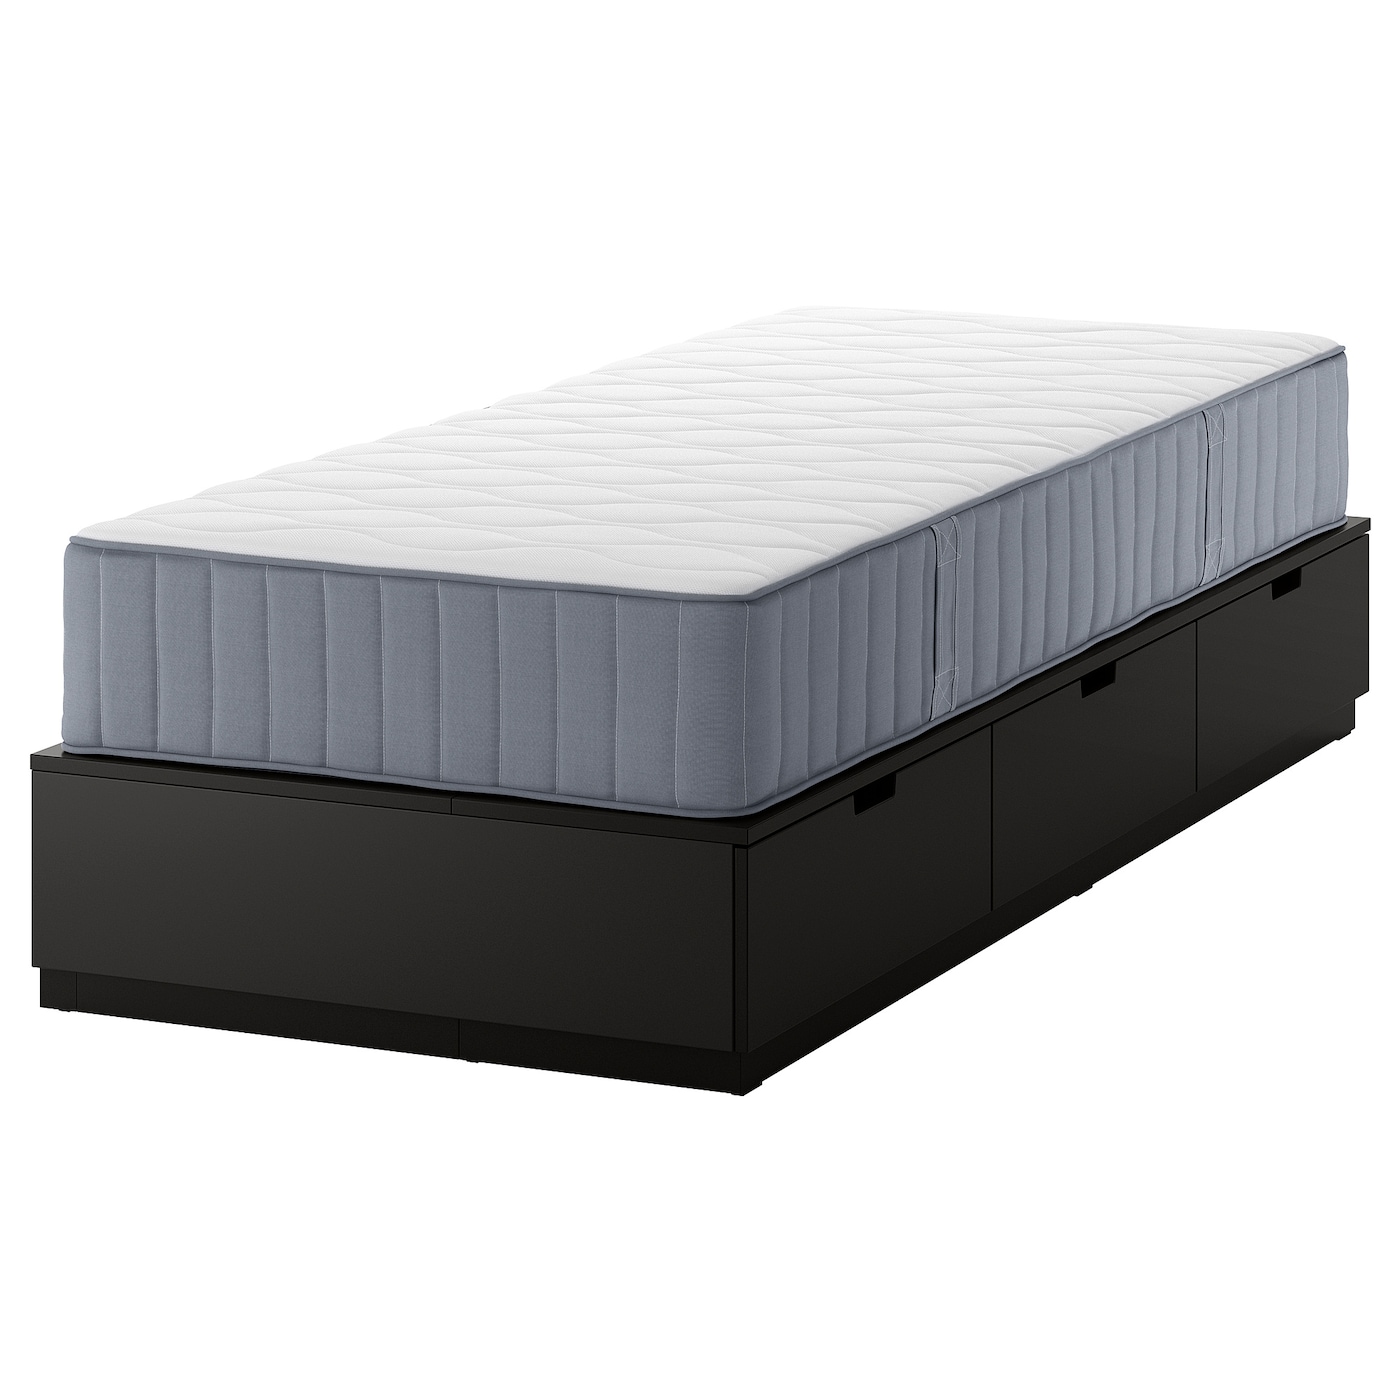 Каркас кровати с местом для хранения и матрасом - IKEA NORDLI, 200х90 см, матрас средне-жесткий, черный, НОРДЛИ ИКЕА